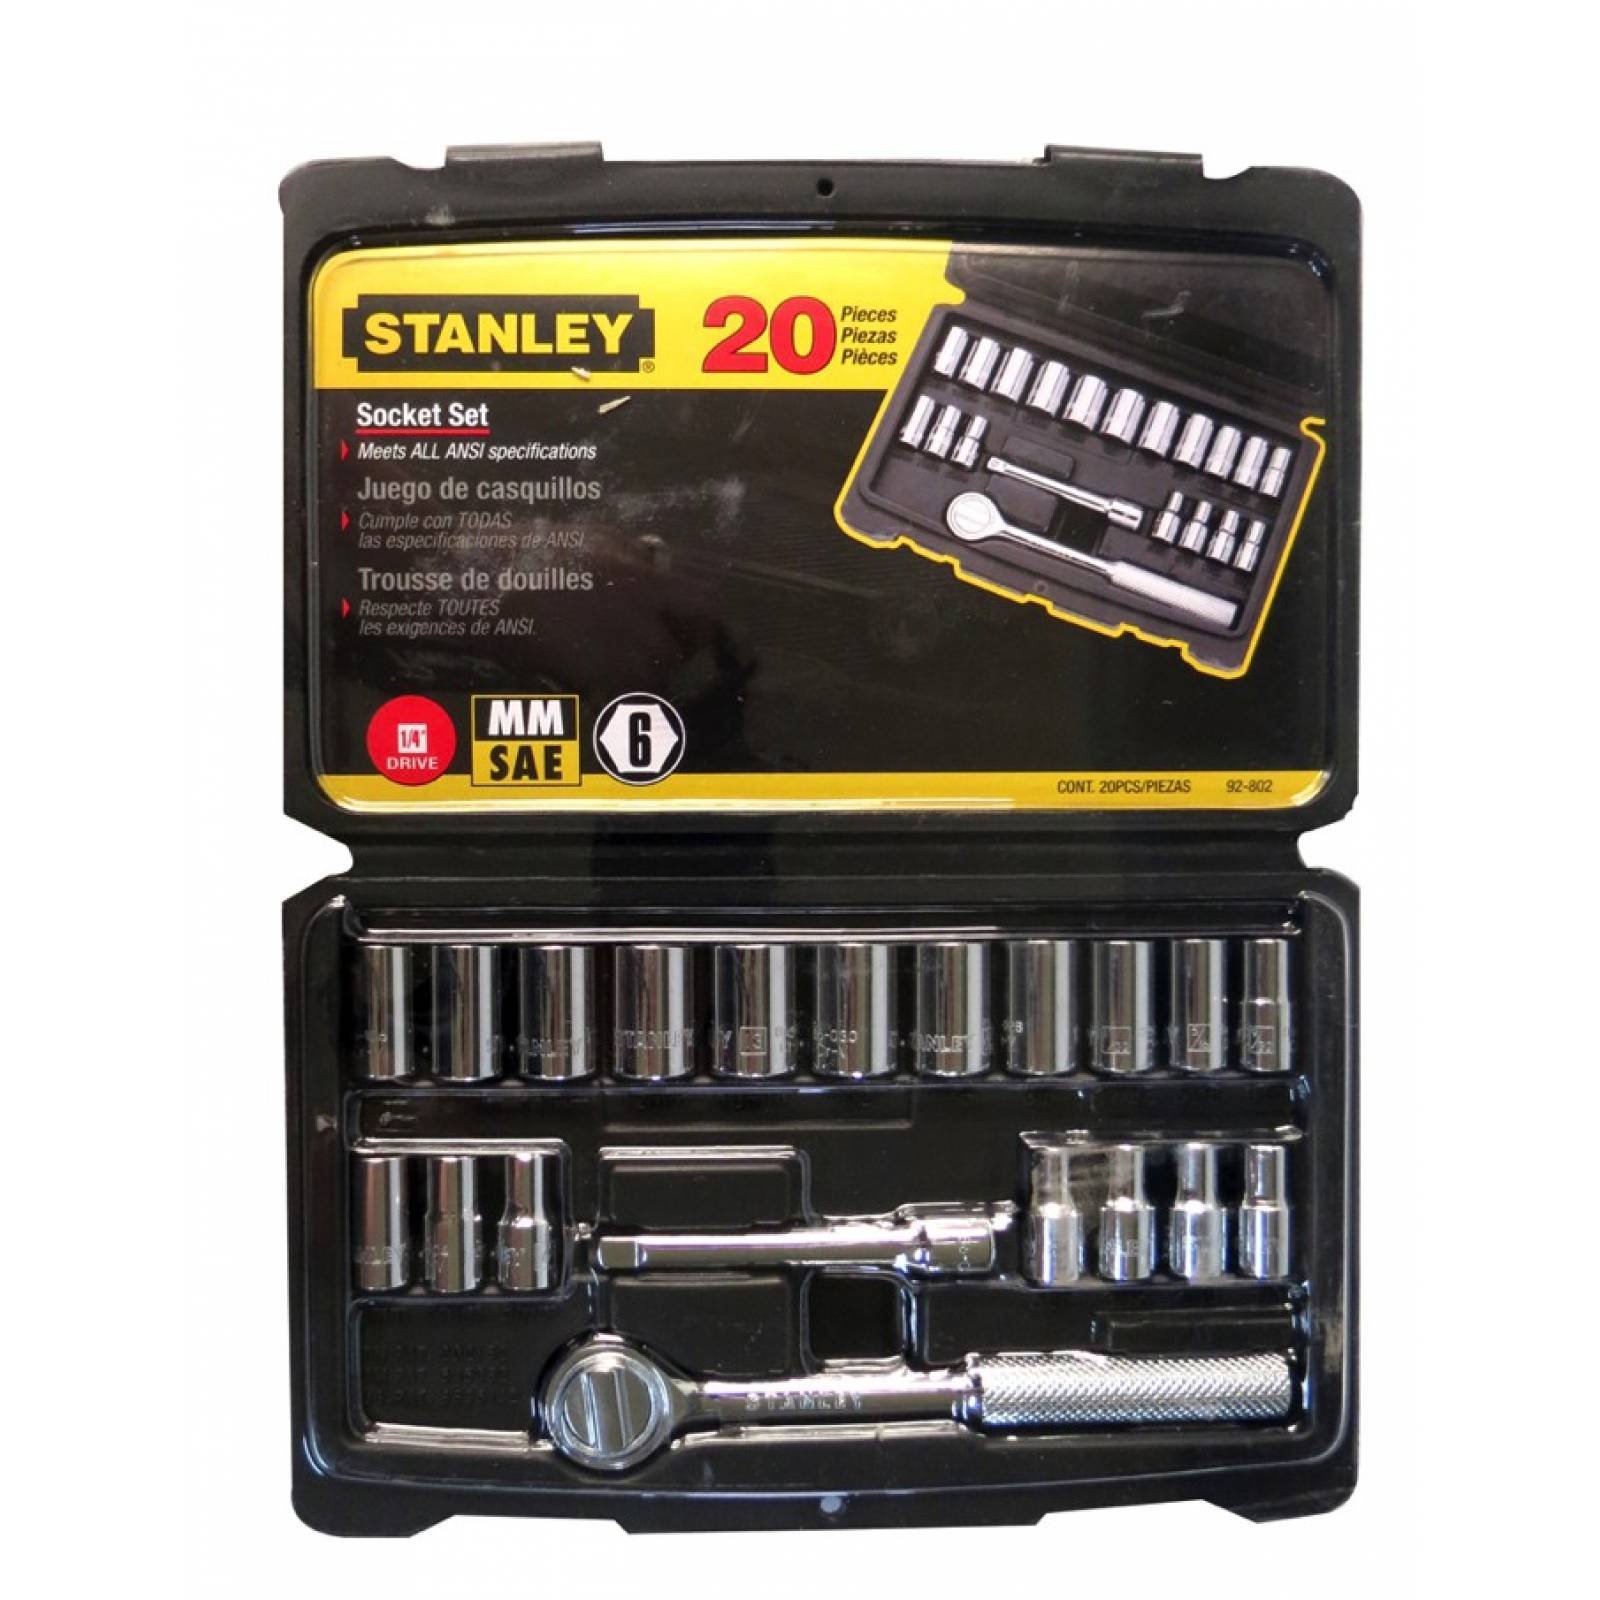 Autocle 1/4" 20 Pz Estandar y Milimetrica 5/32-1/2" 7-13mm 92802 Stanley